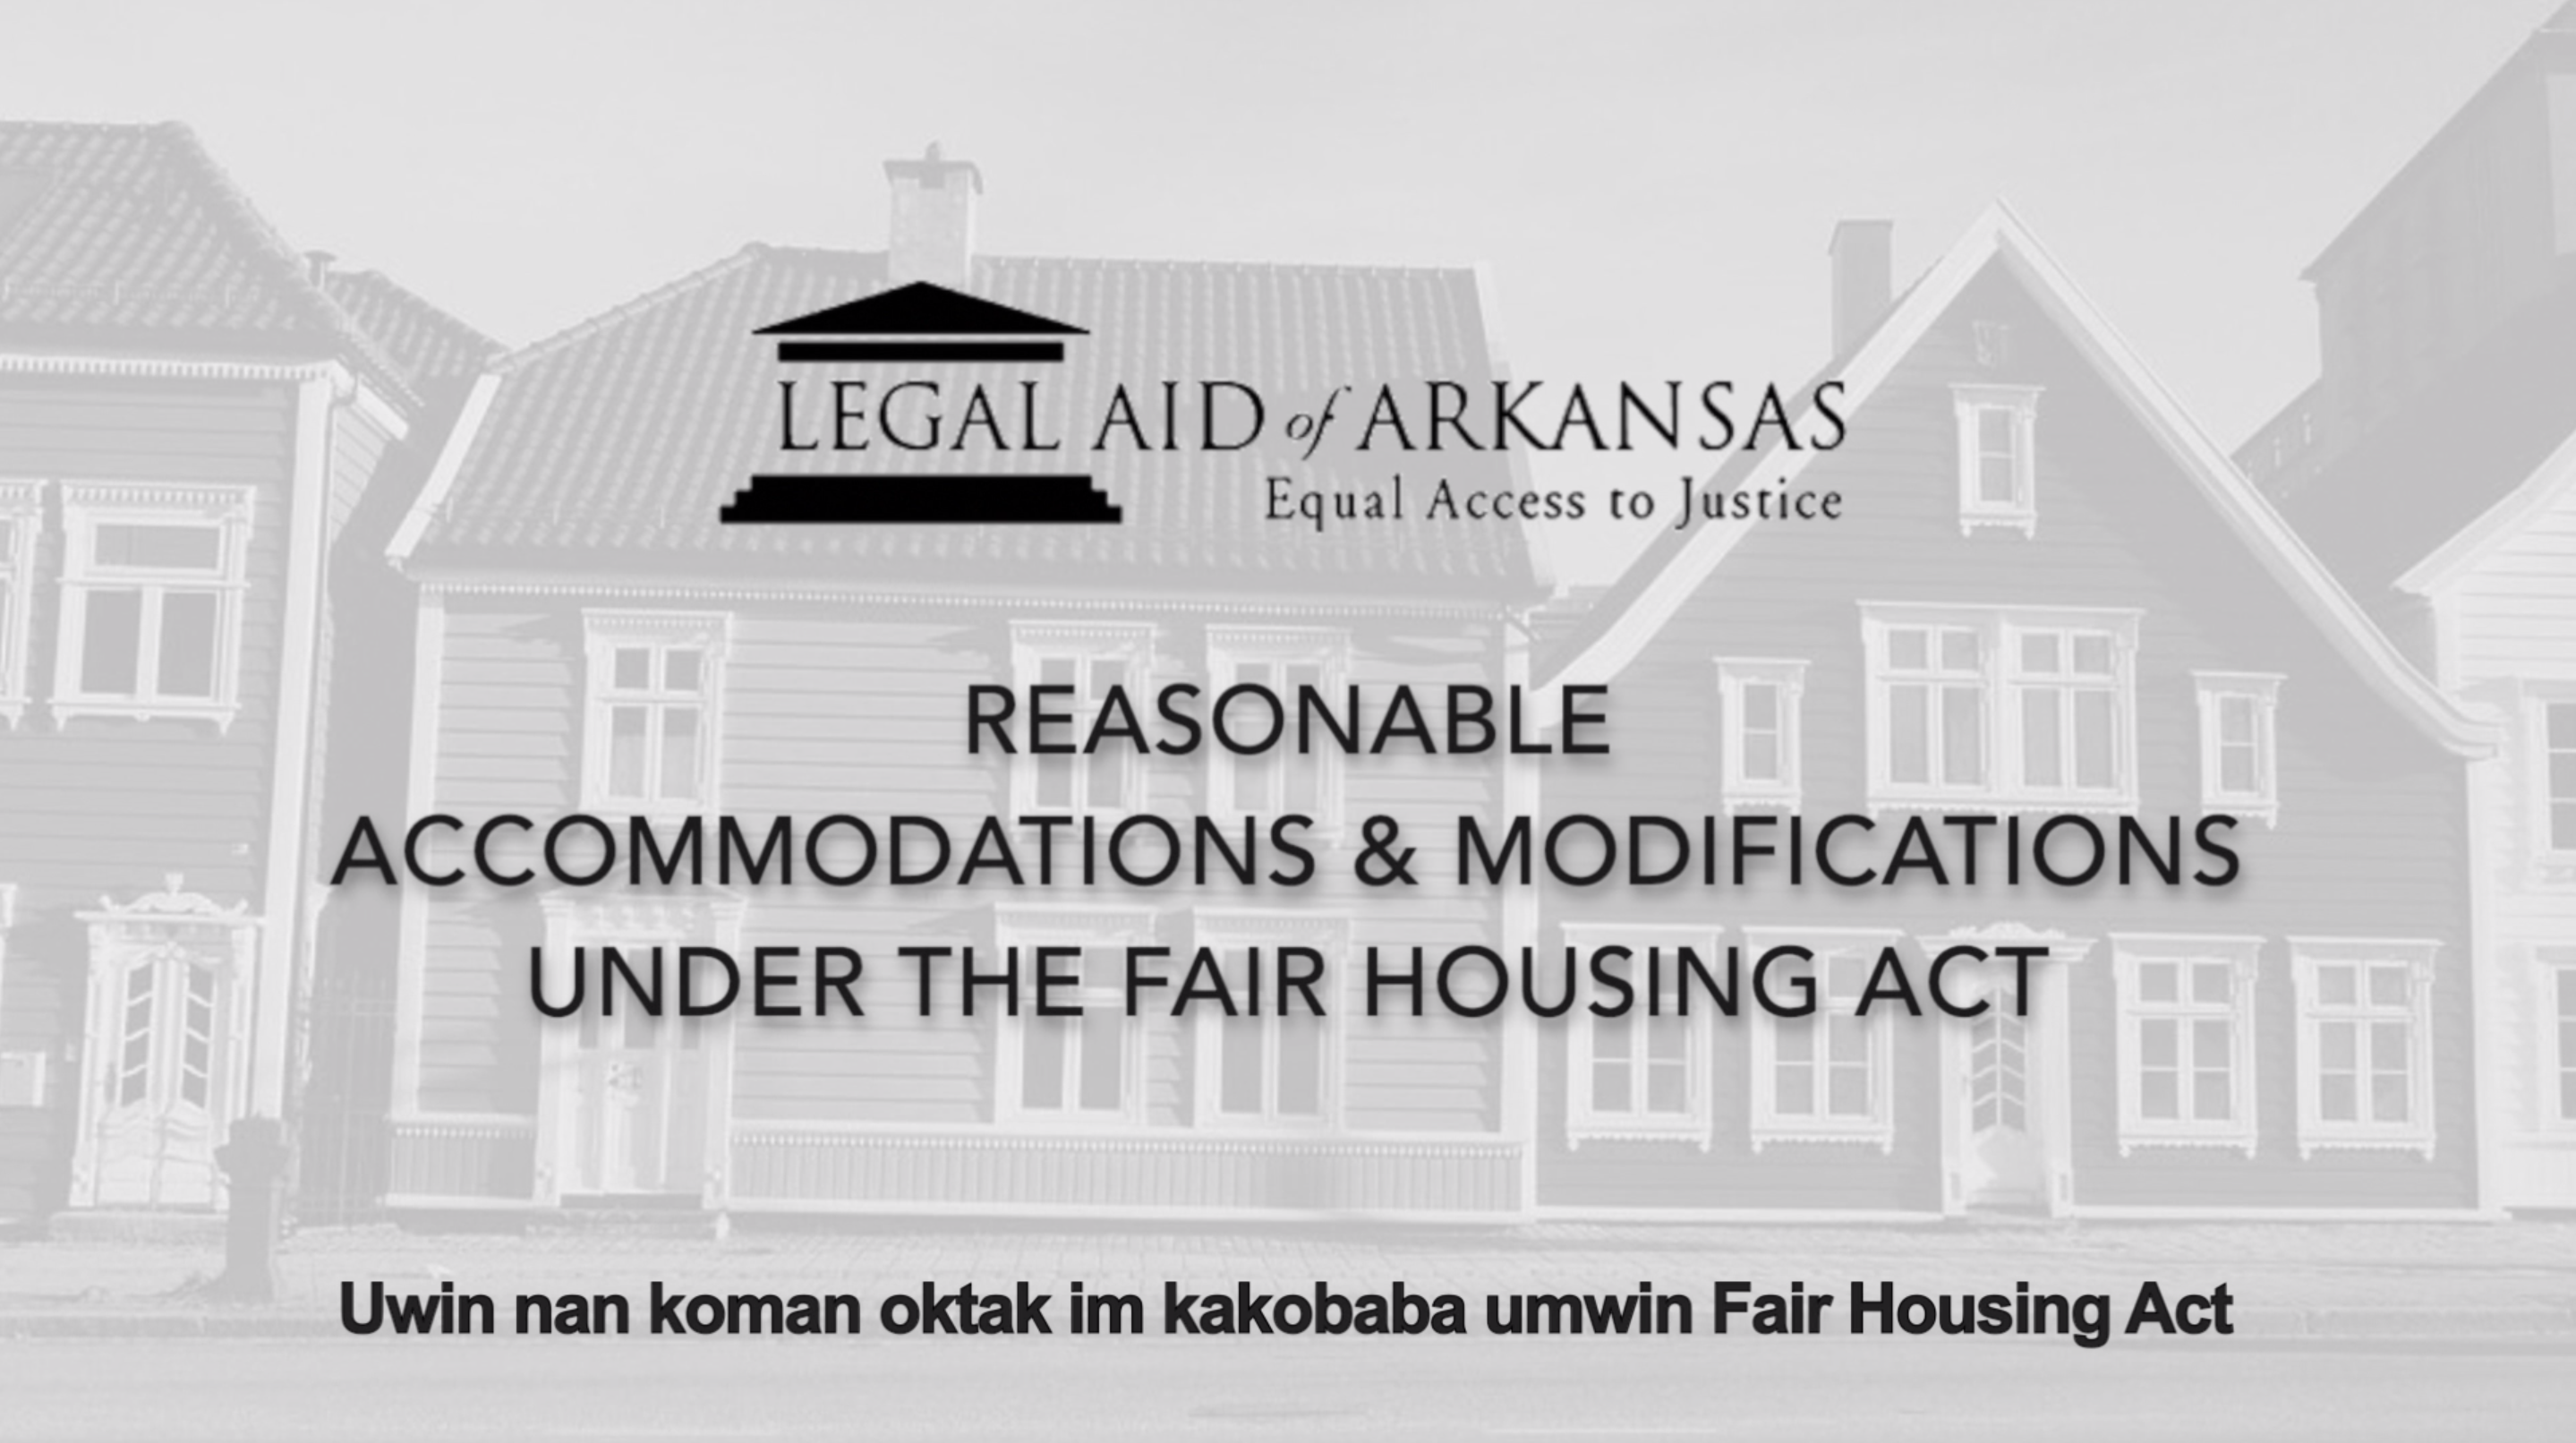 VIDEO - Uwin nan koman oktak im kakobaba umwin Fair Housing Act